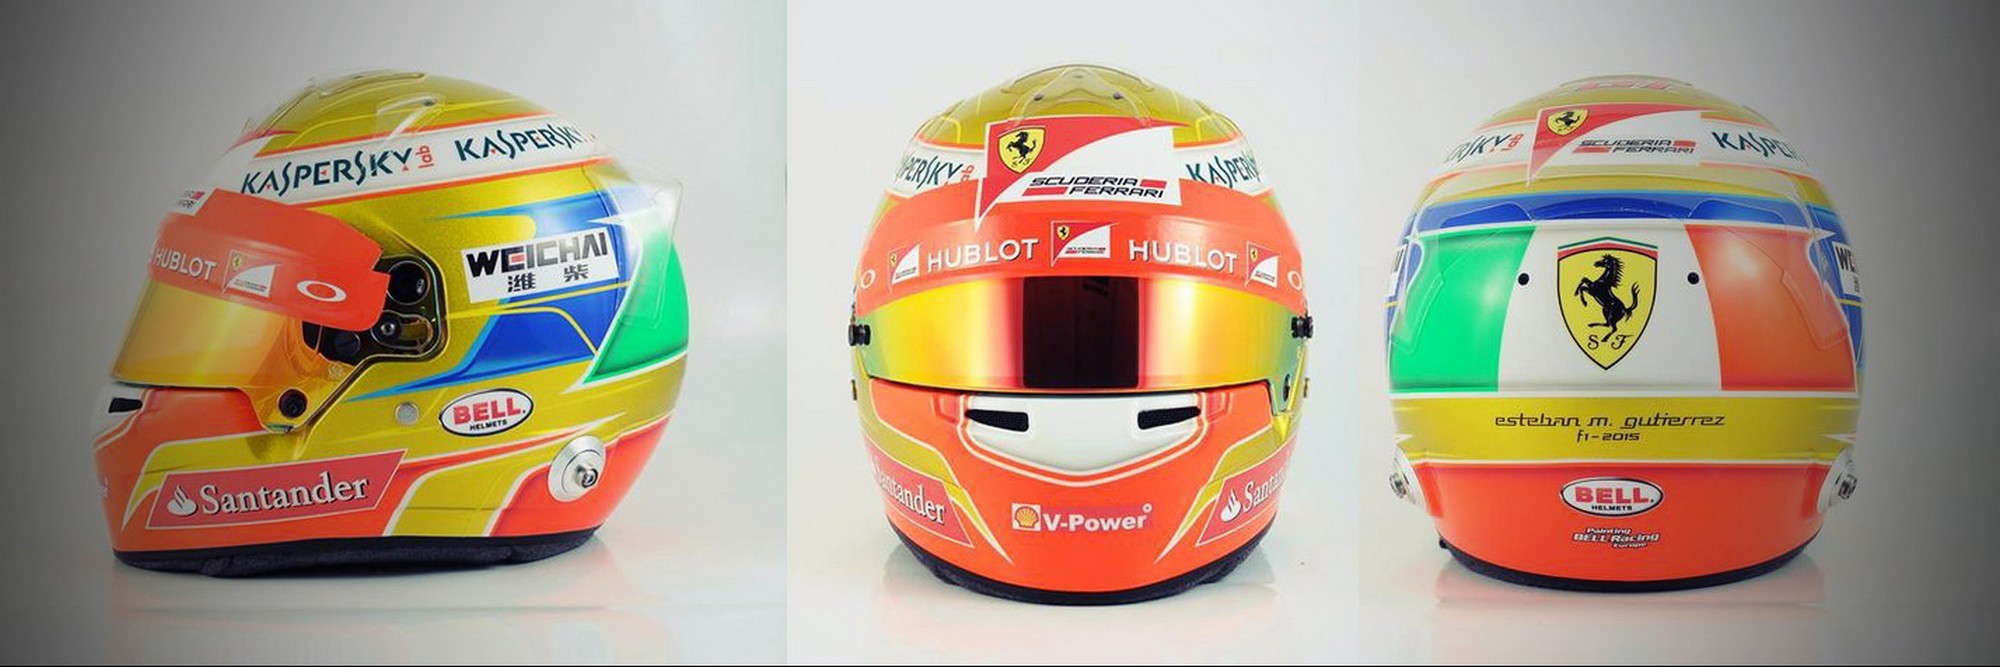 Шлем Эстебана Гутьерреса на сезон 2015 года | 2015 helmet of Esteban Gutierrez